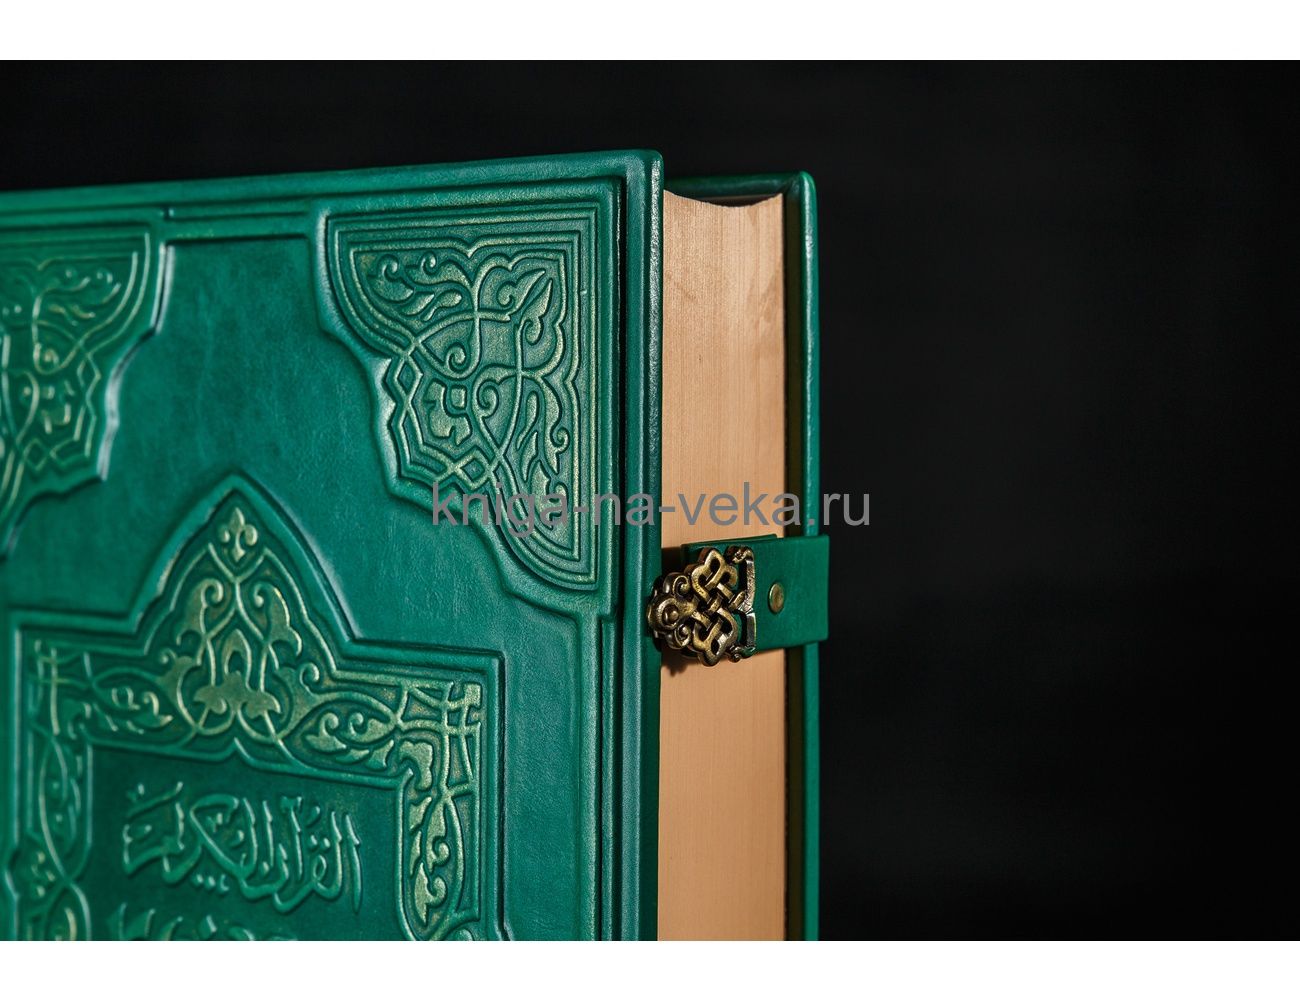 Книга «Коран» в кожаном переплёте с замками